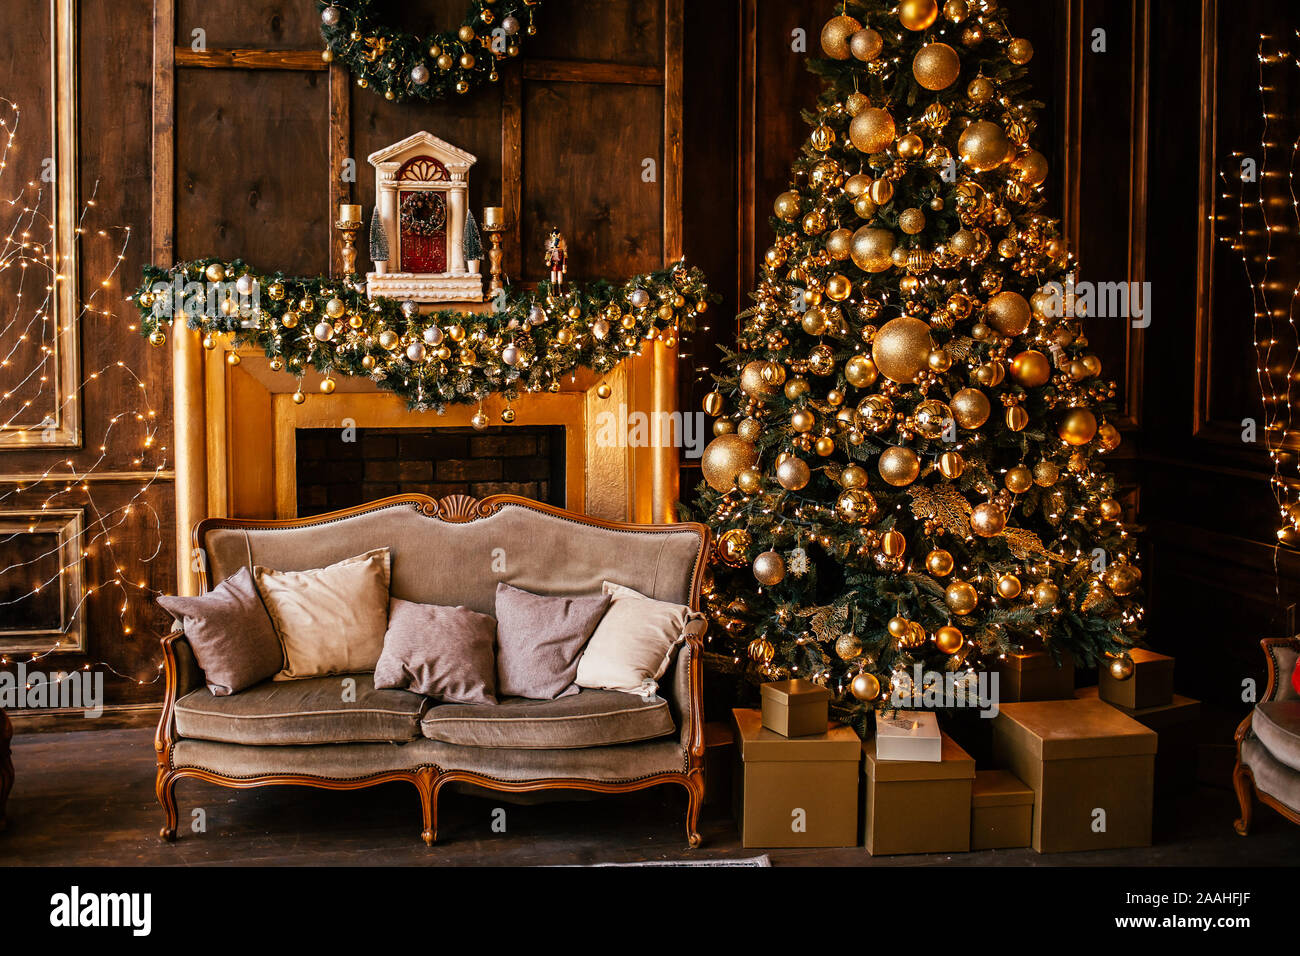 Đừng bỏ lỡ cơ hội chiêm ngưỡng phòng khách trang trí theo chủ đề Noel vô cùng ấn tượng. Những chi tiết nhỏ xinh như những bông tuyết, cây thông, nụ cười cùng những món quà sẽ làm cho không gian trở nên rạng ngời, ấm cúng và vui tươi hơn. Hãy trang trí cho ngôi nhà của bạn thêm phần cuốn hút và đầy phong cách!